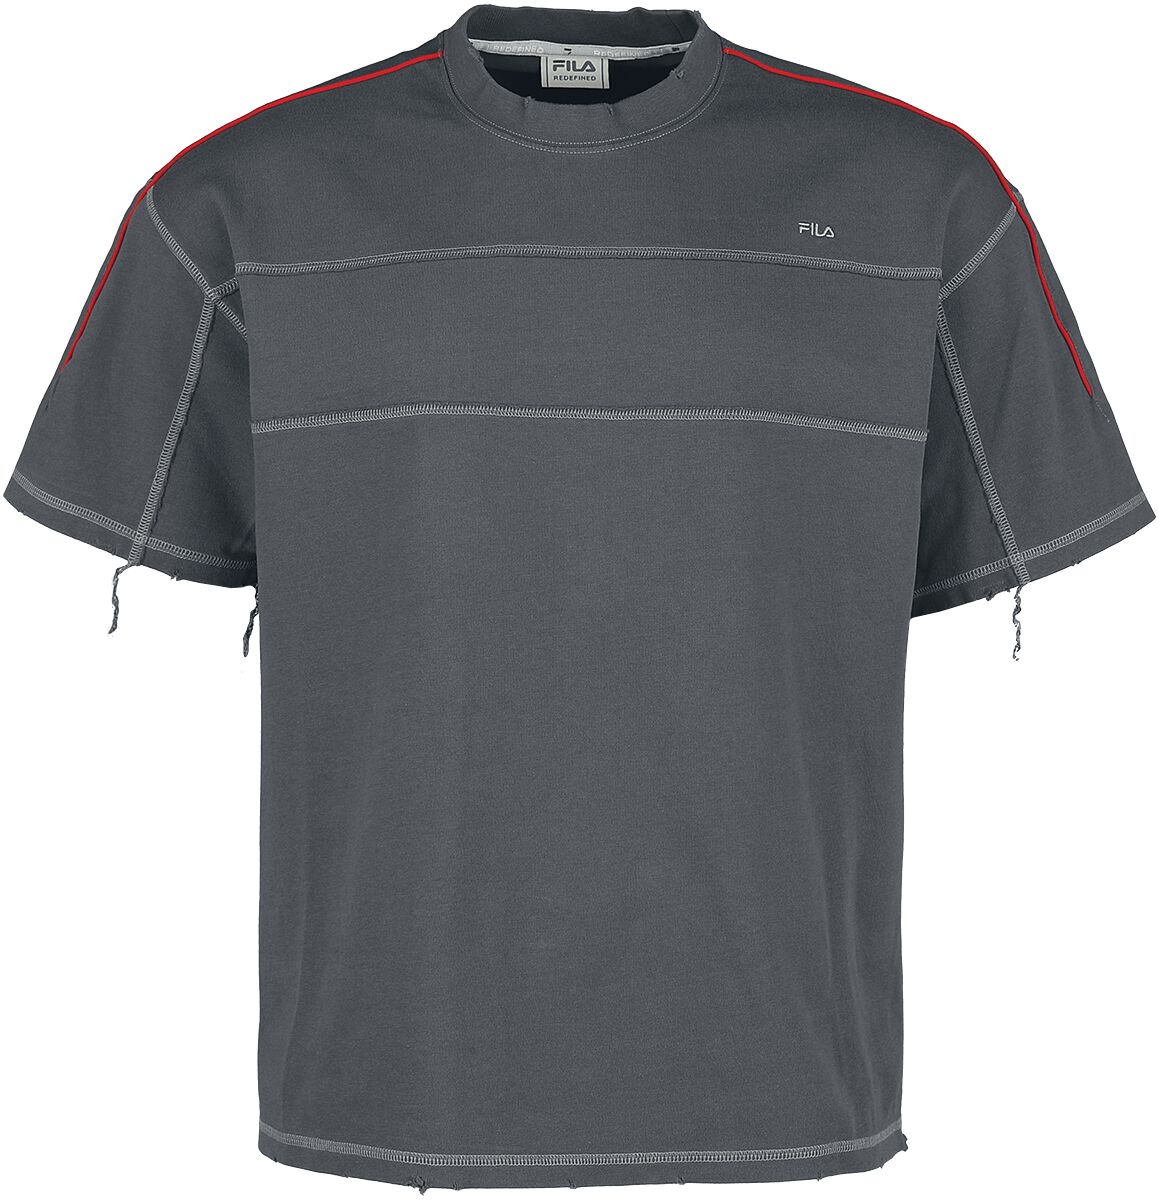 Fila S11 RUINED T-SHIRT T-Shirt dunkelgrau in M